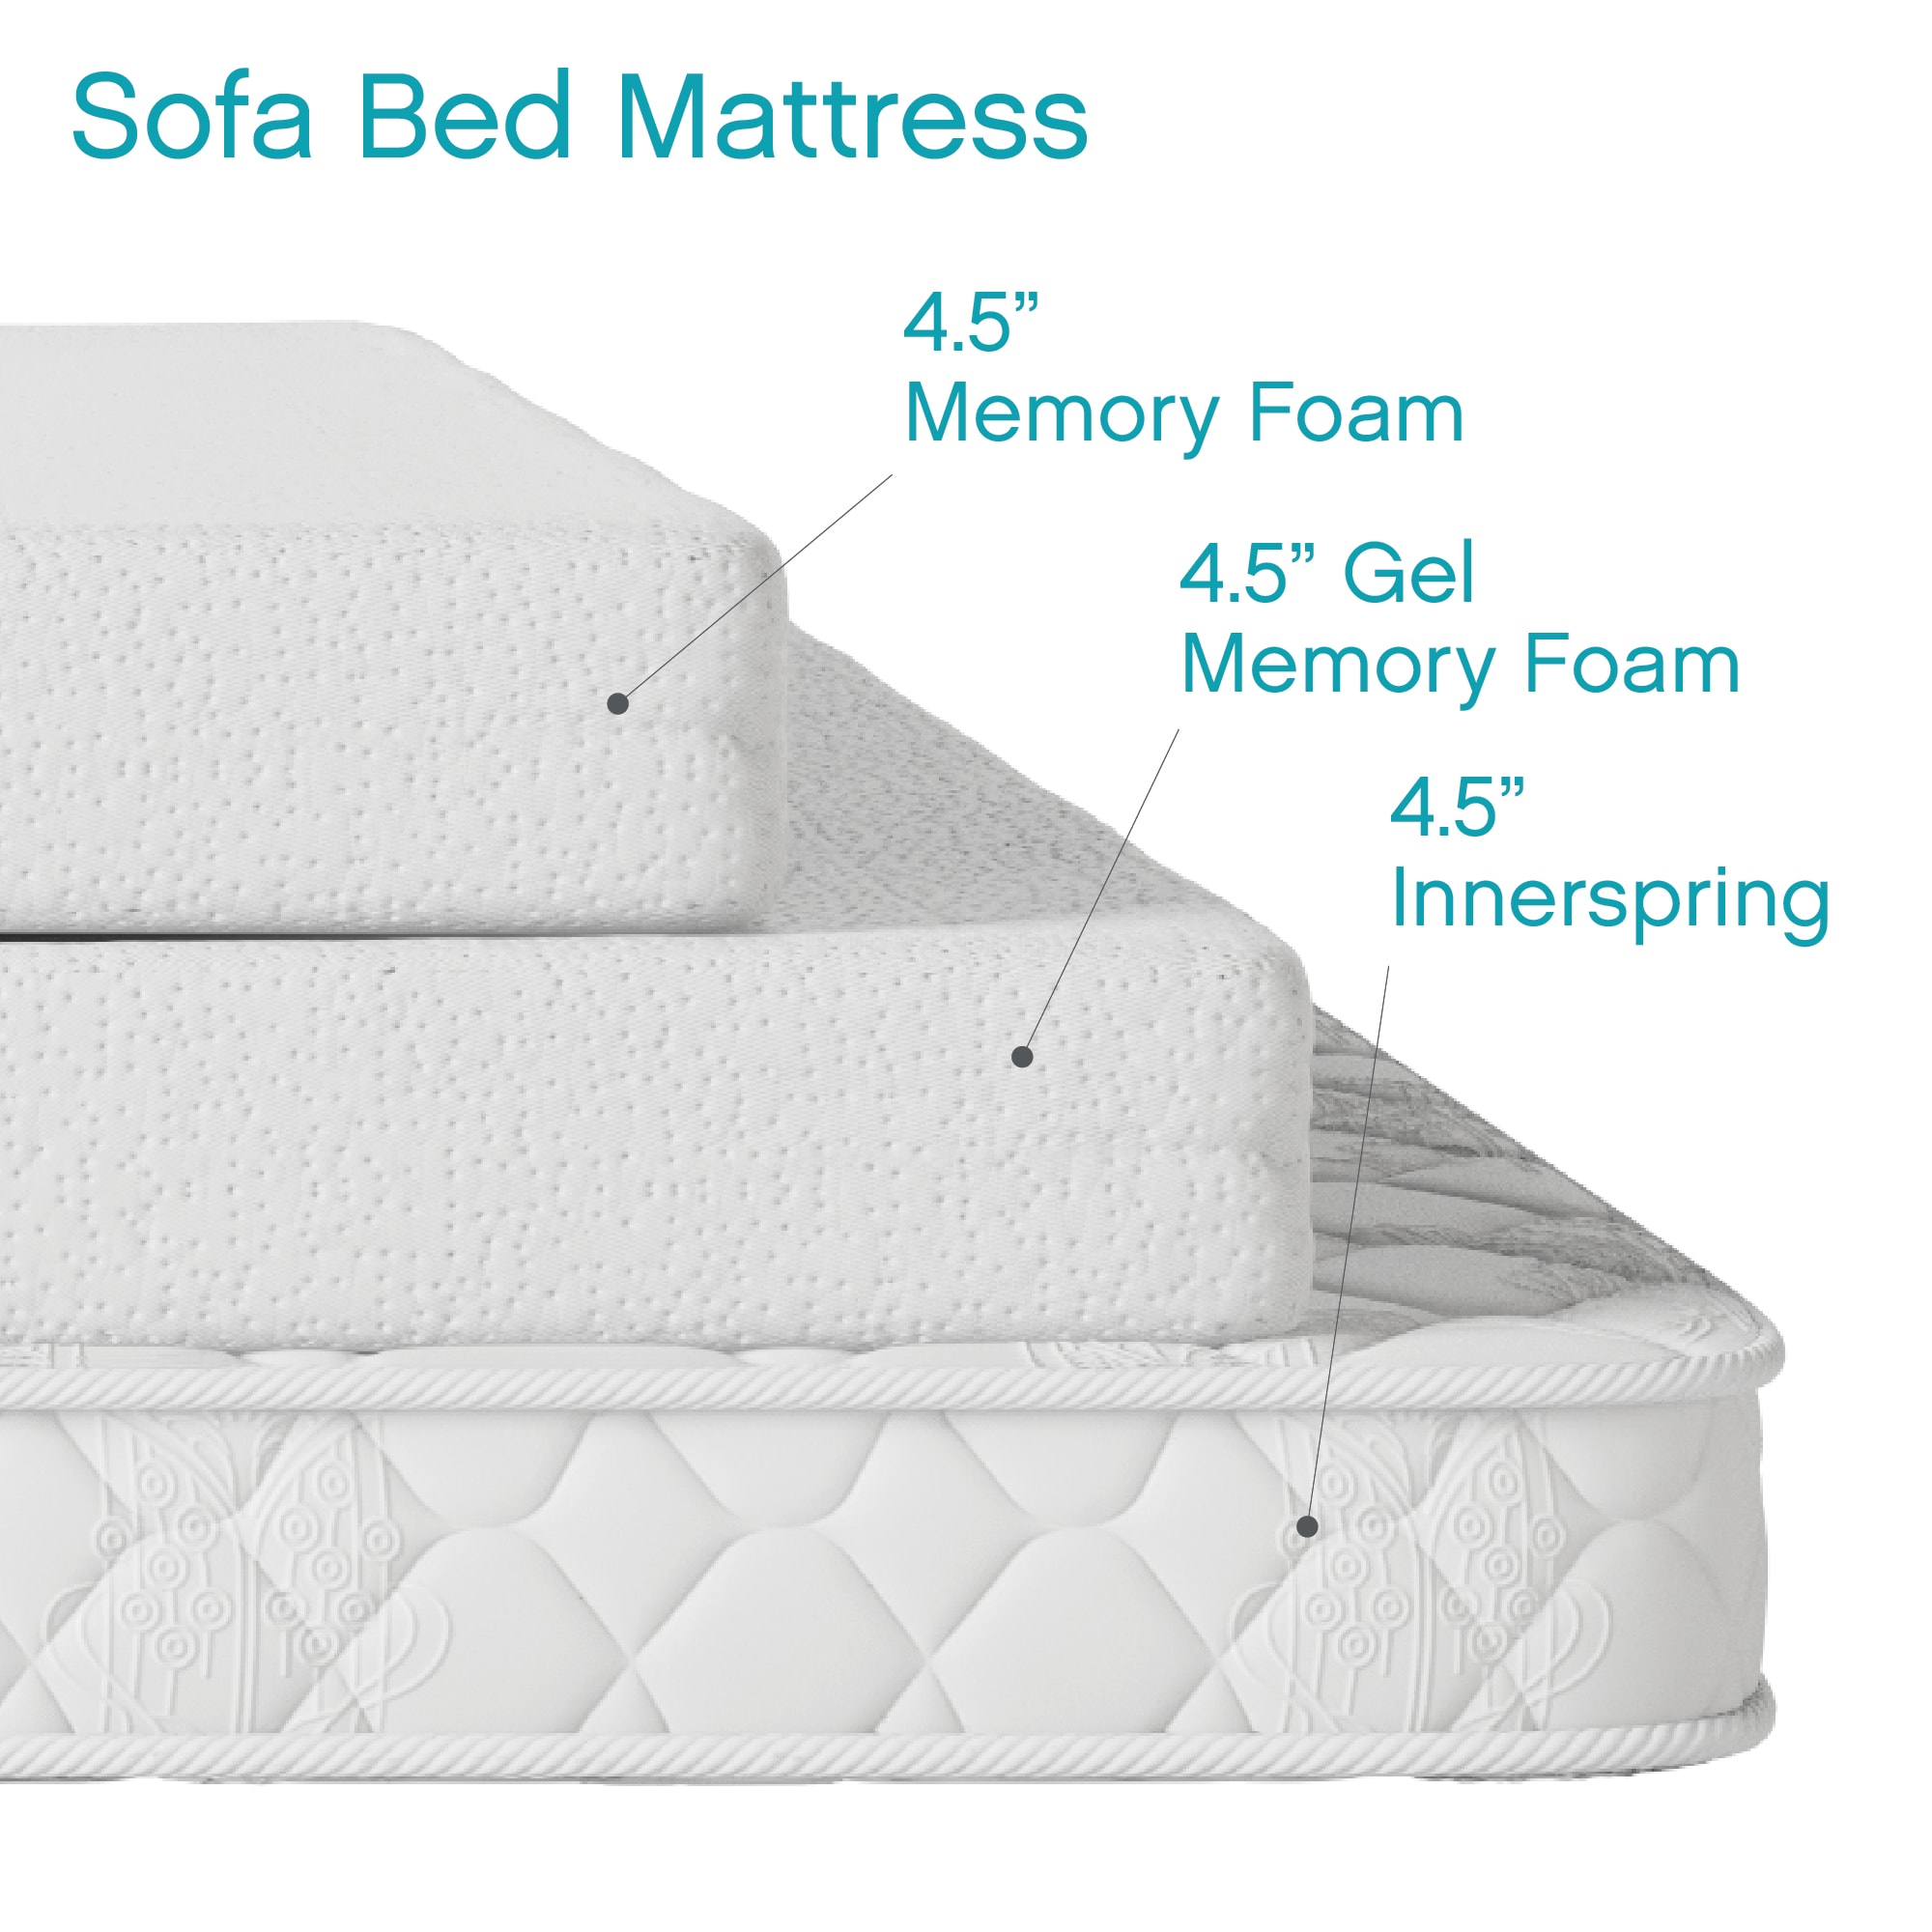 Cool Gel 4" Memory Foam Replacement Sleep Sofa Bed Mattress, Queen - image 4 of 13